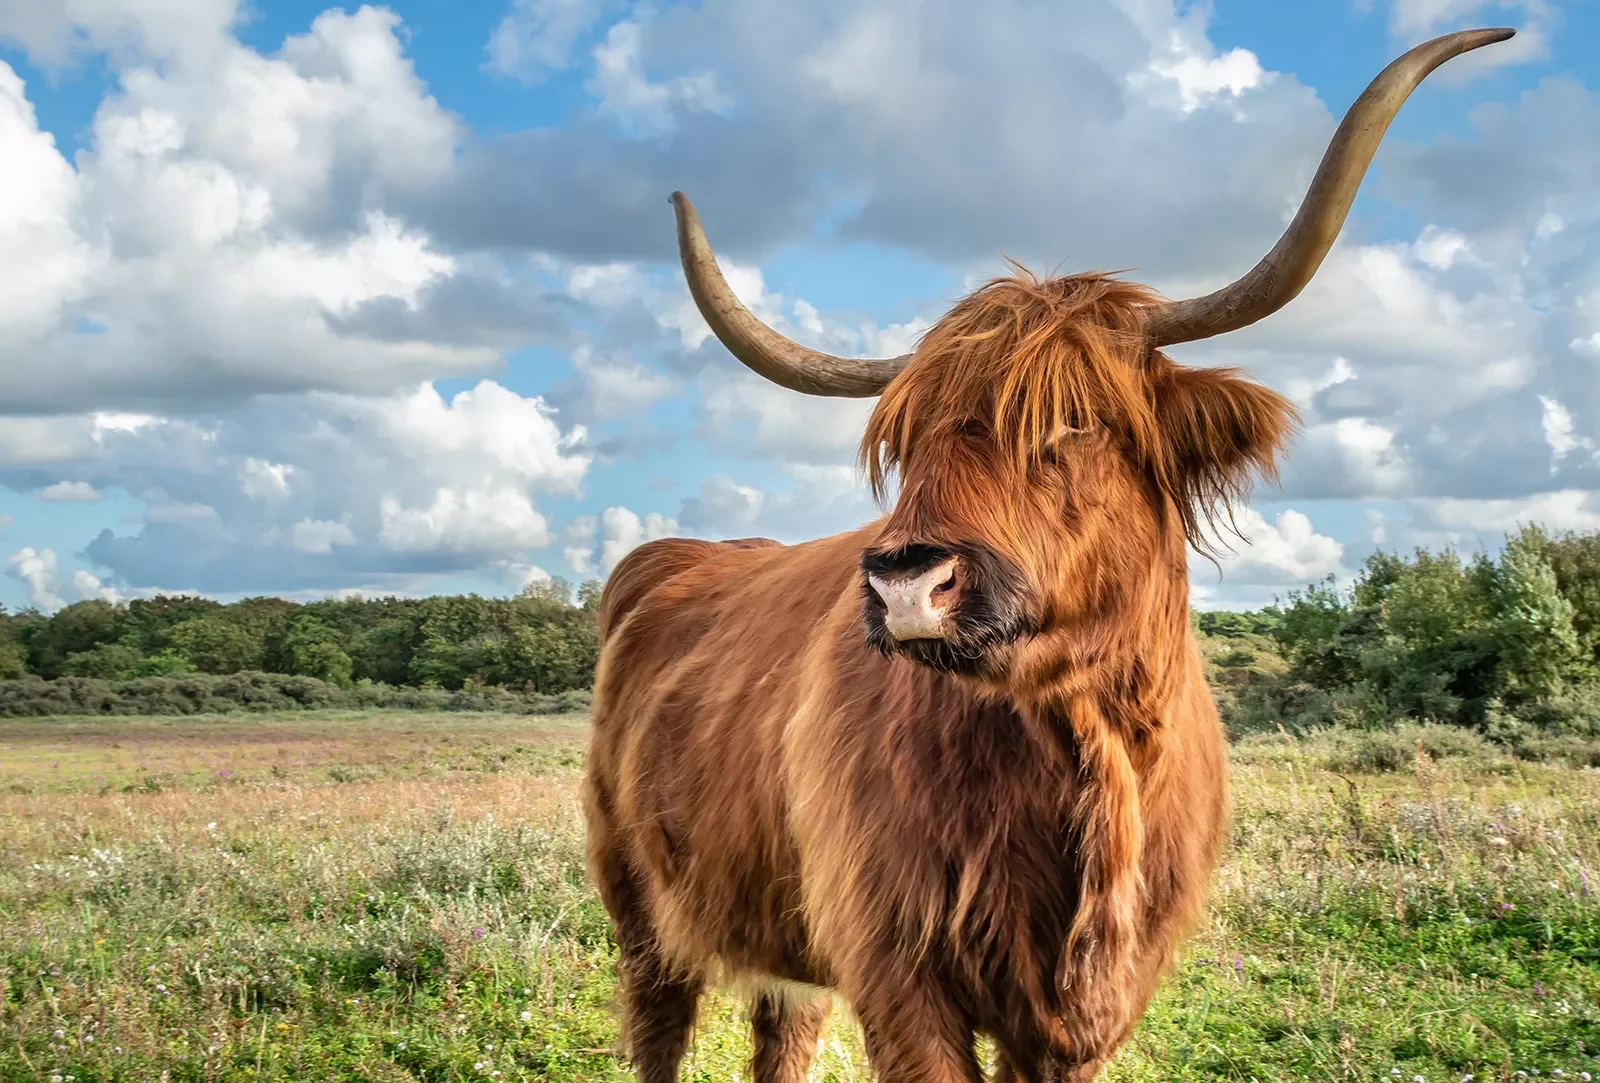 Longhorn cow in a grassy field